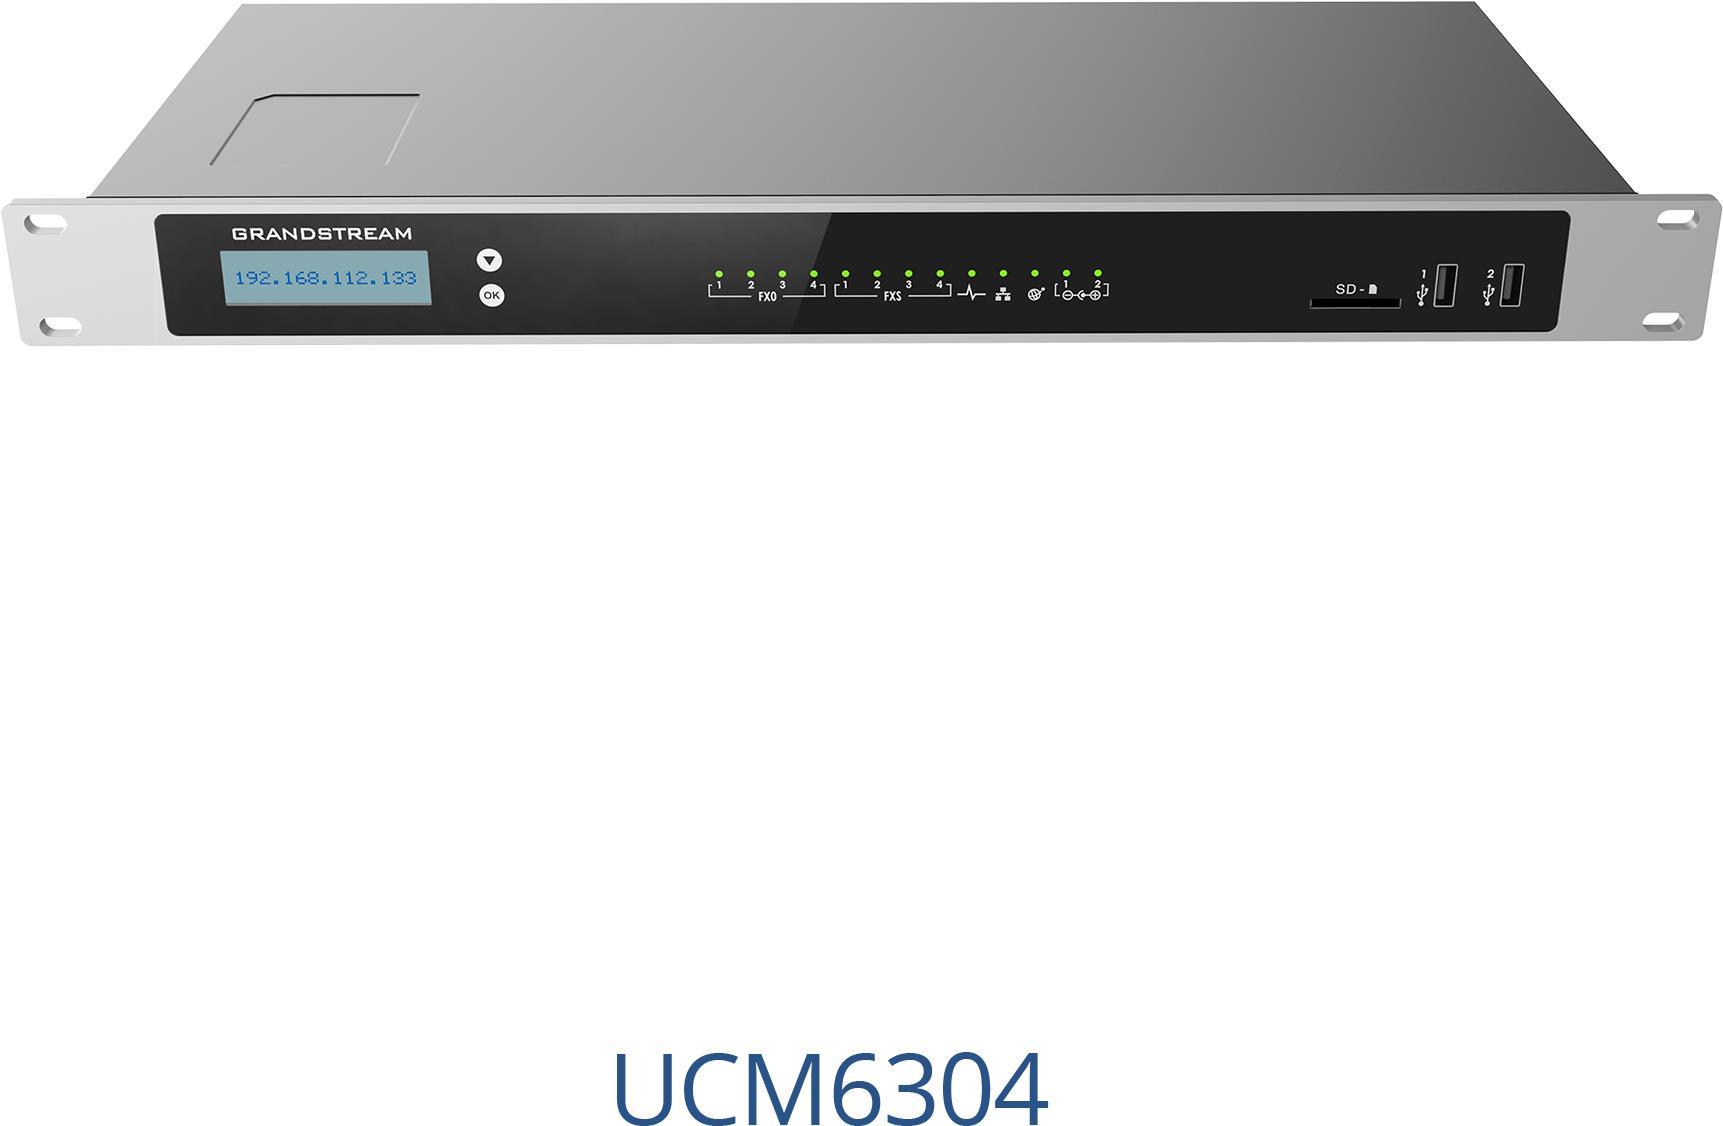 Grandstream Networks UCM6304. Produkttyp: IP Centrex (gehostete/virtuelle IP), Zahl der Benutzer: 2000 Benutzer. Schnittstellentyp Ethernet-LAN: Gigabit Ethernet. AC Eingangsspannung: 100 - 240 V, AC Eingangsfrequenz: 50/60 Hz, Netzteil Ausgangsspannung: 12 V. Breite: 187,2 mm, Tiefe: 485 mm, Höhe: 46,2 mm. Display-Typ: LCD (UCM 6304)